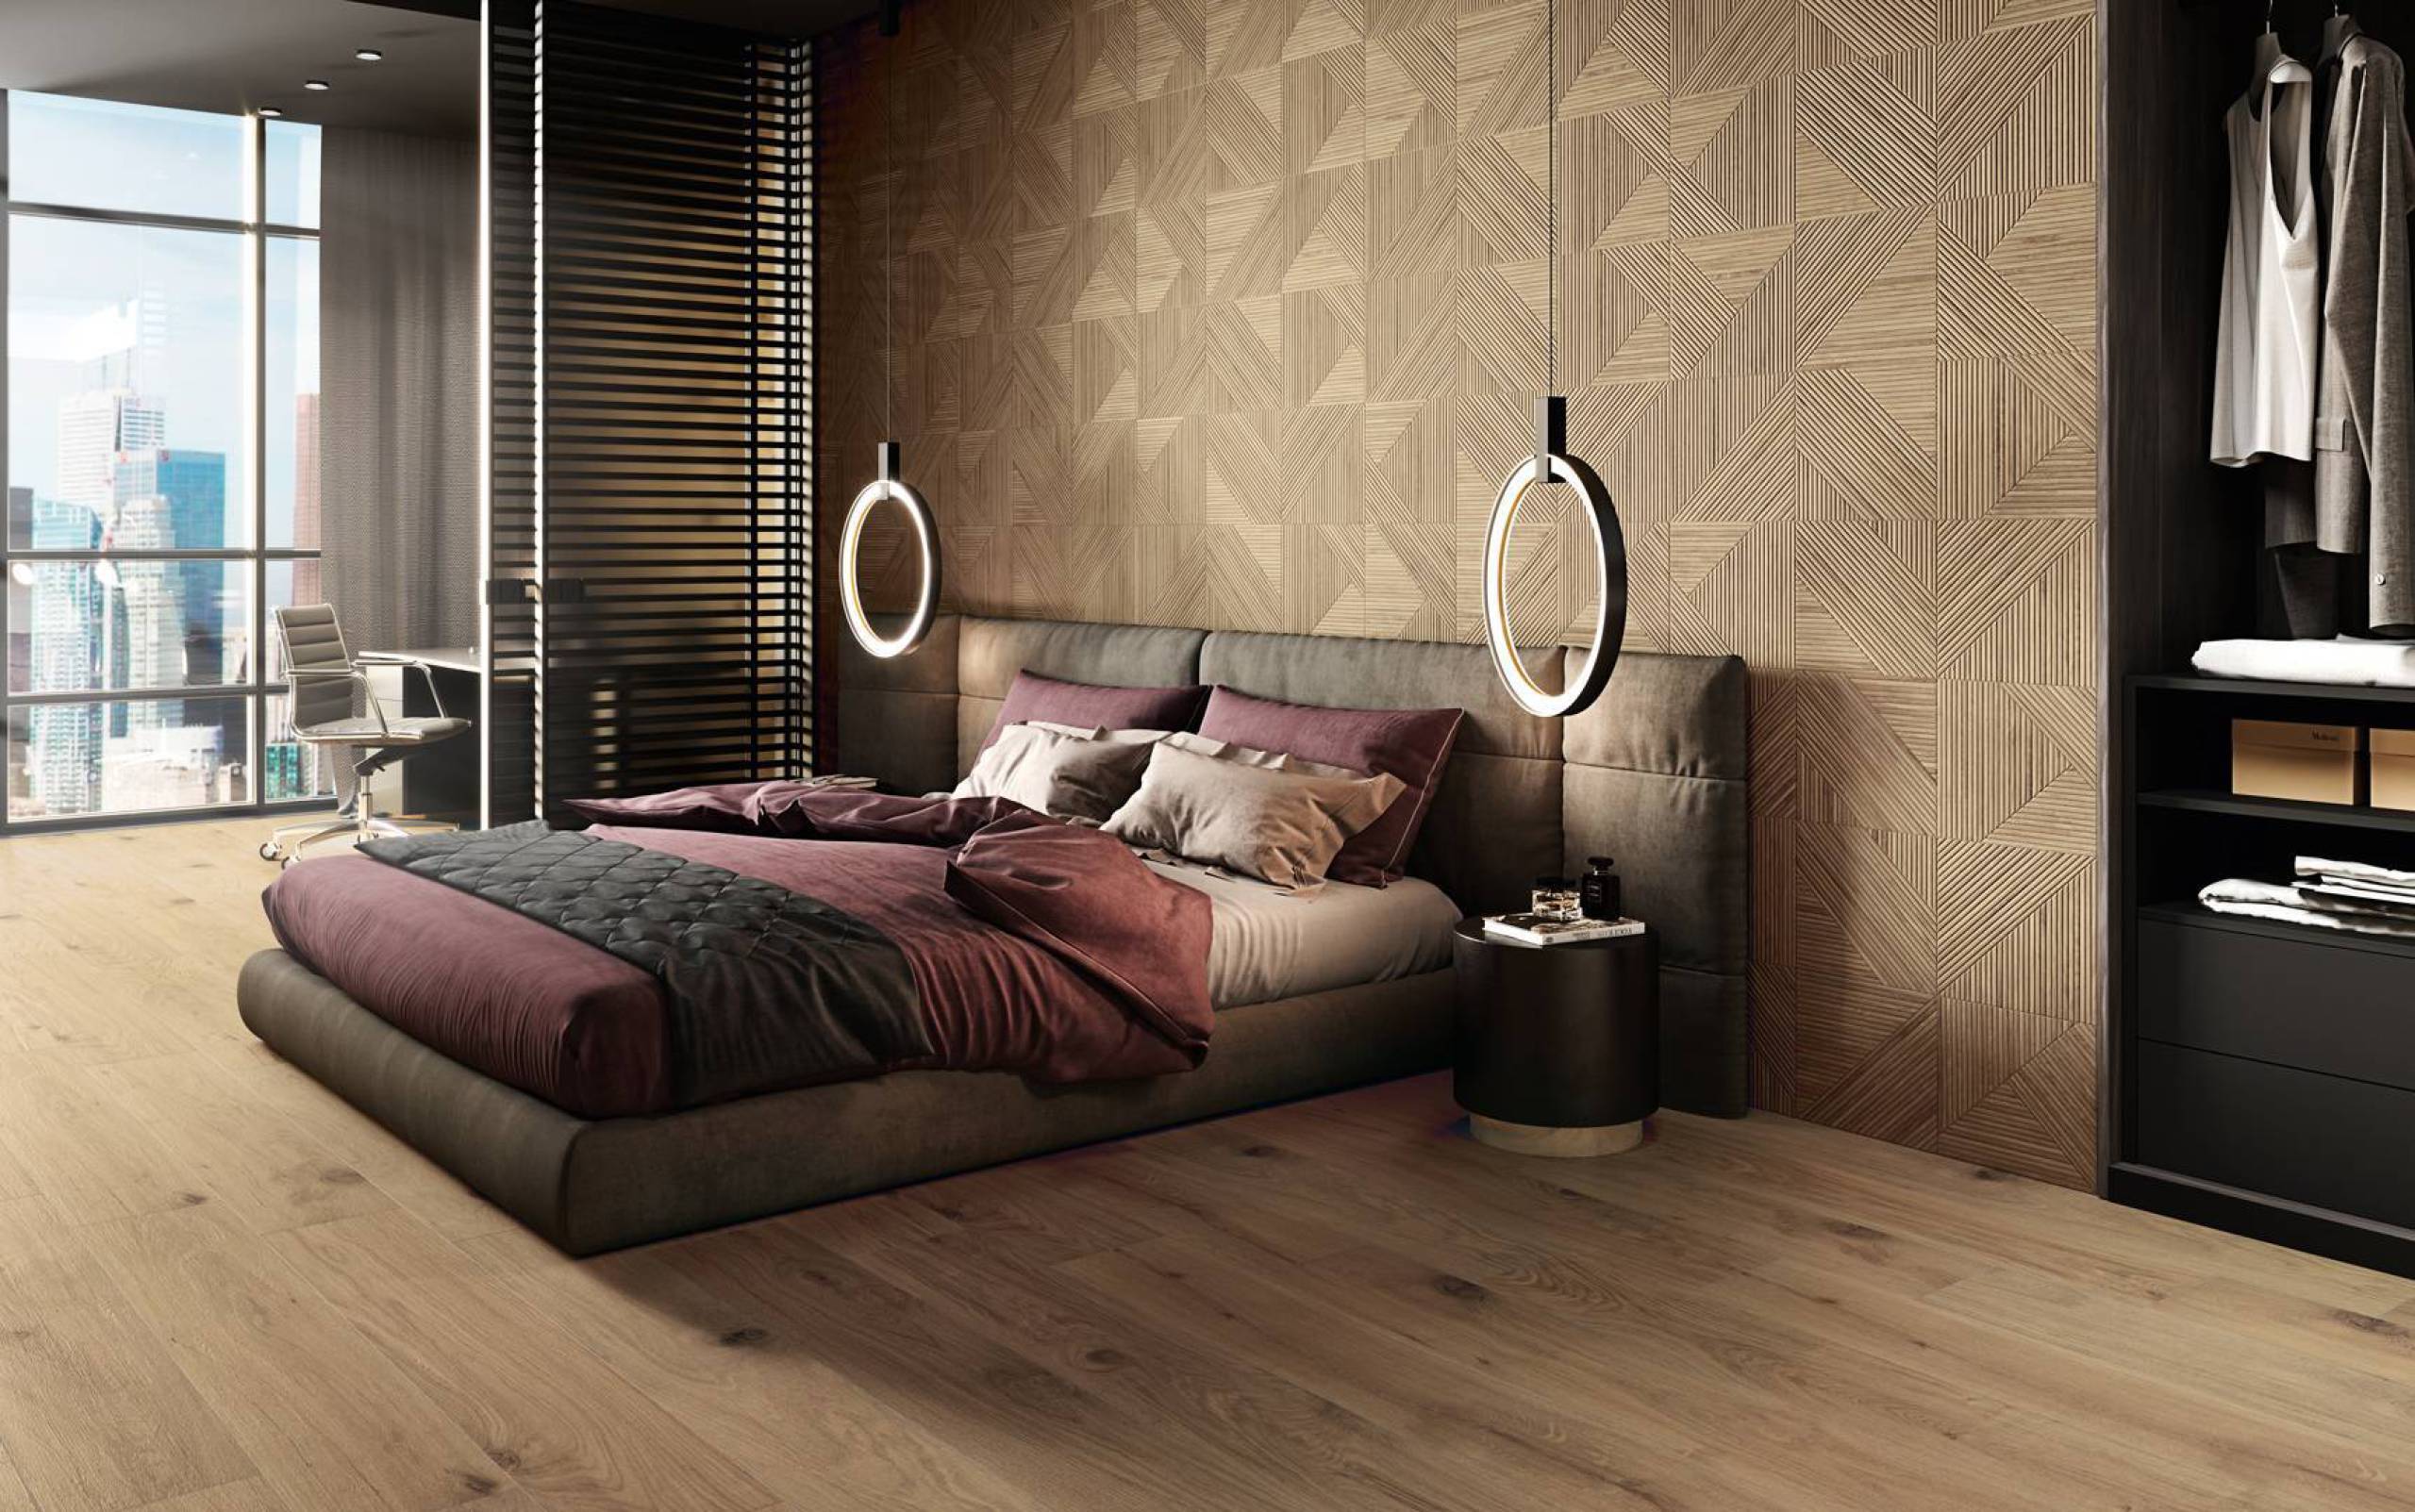 Tangram houtlook tegels in de slaapkamer